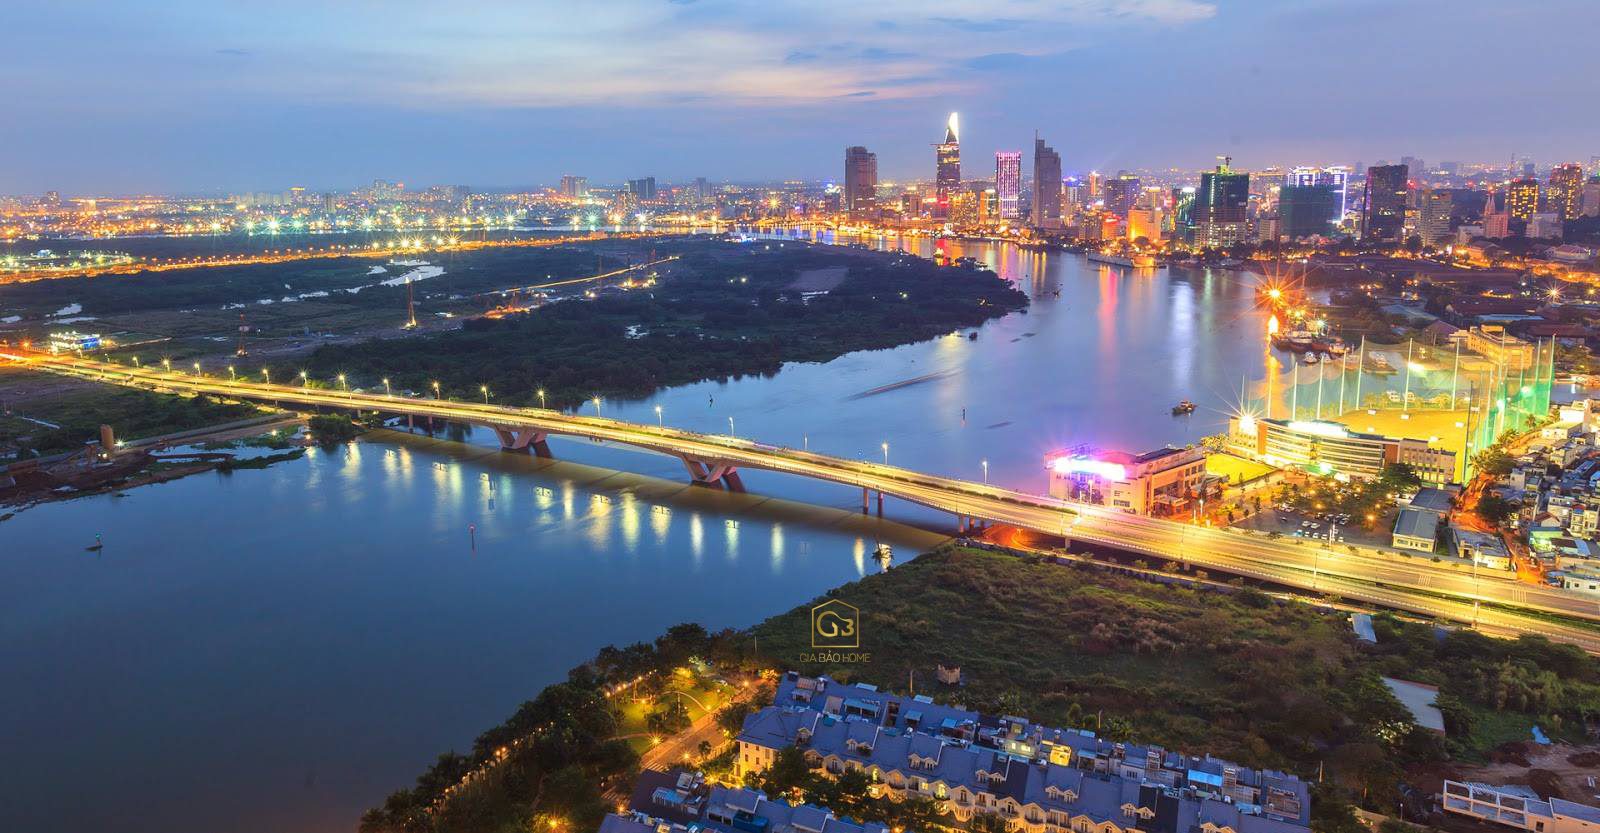 Ở đây, các cư dân sẽ có thể chiêm ngưỡng được toàn cảnh xung quanh cũng như tầm nhìn ra dòng sông Sài Gòn và những vỉa hè xanh mát mẻ được cắt tỉa tỉ mẩn. 